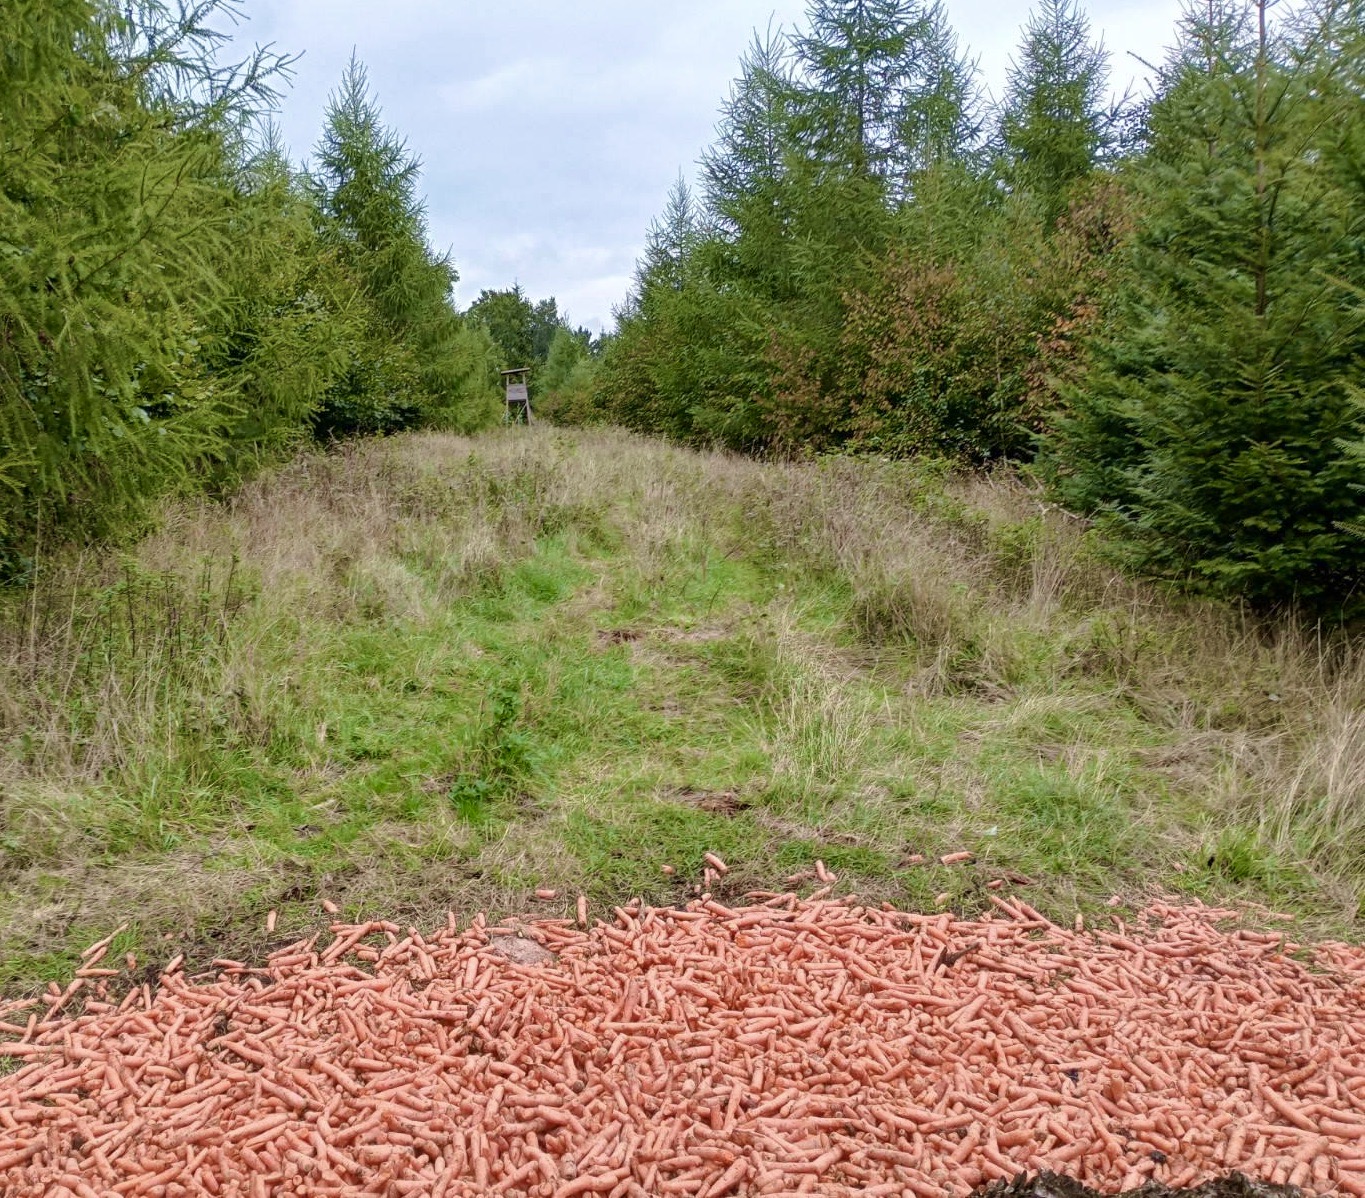 Tanker om jagt, mens jeg går i skoven ved Skaføgaard på Djursland. Gulerødder ligger spredt ud på et fodringssted til vildtet og jagttårnet står meget tæt på.